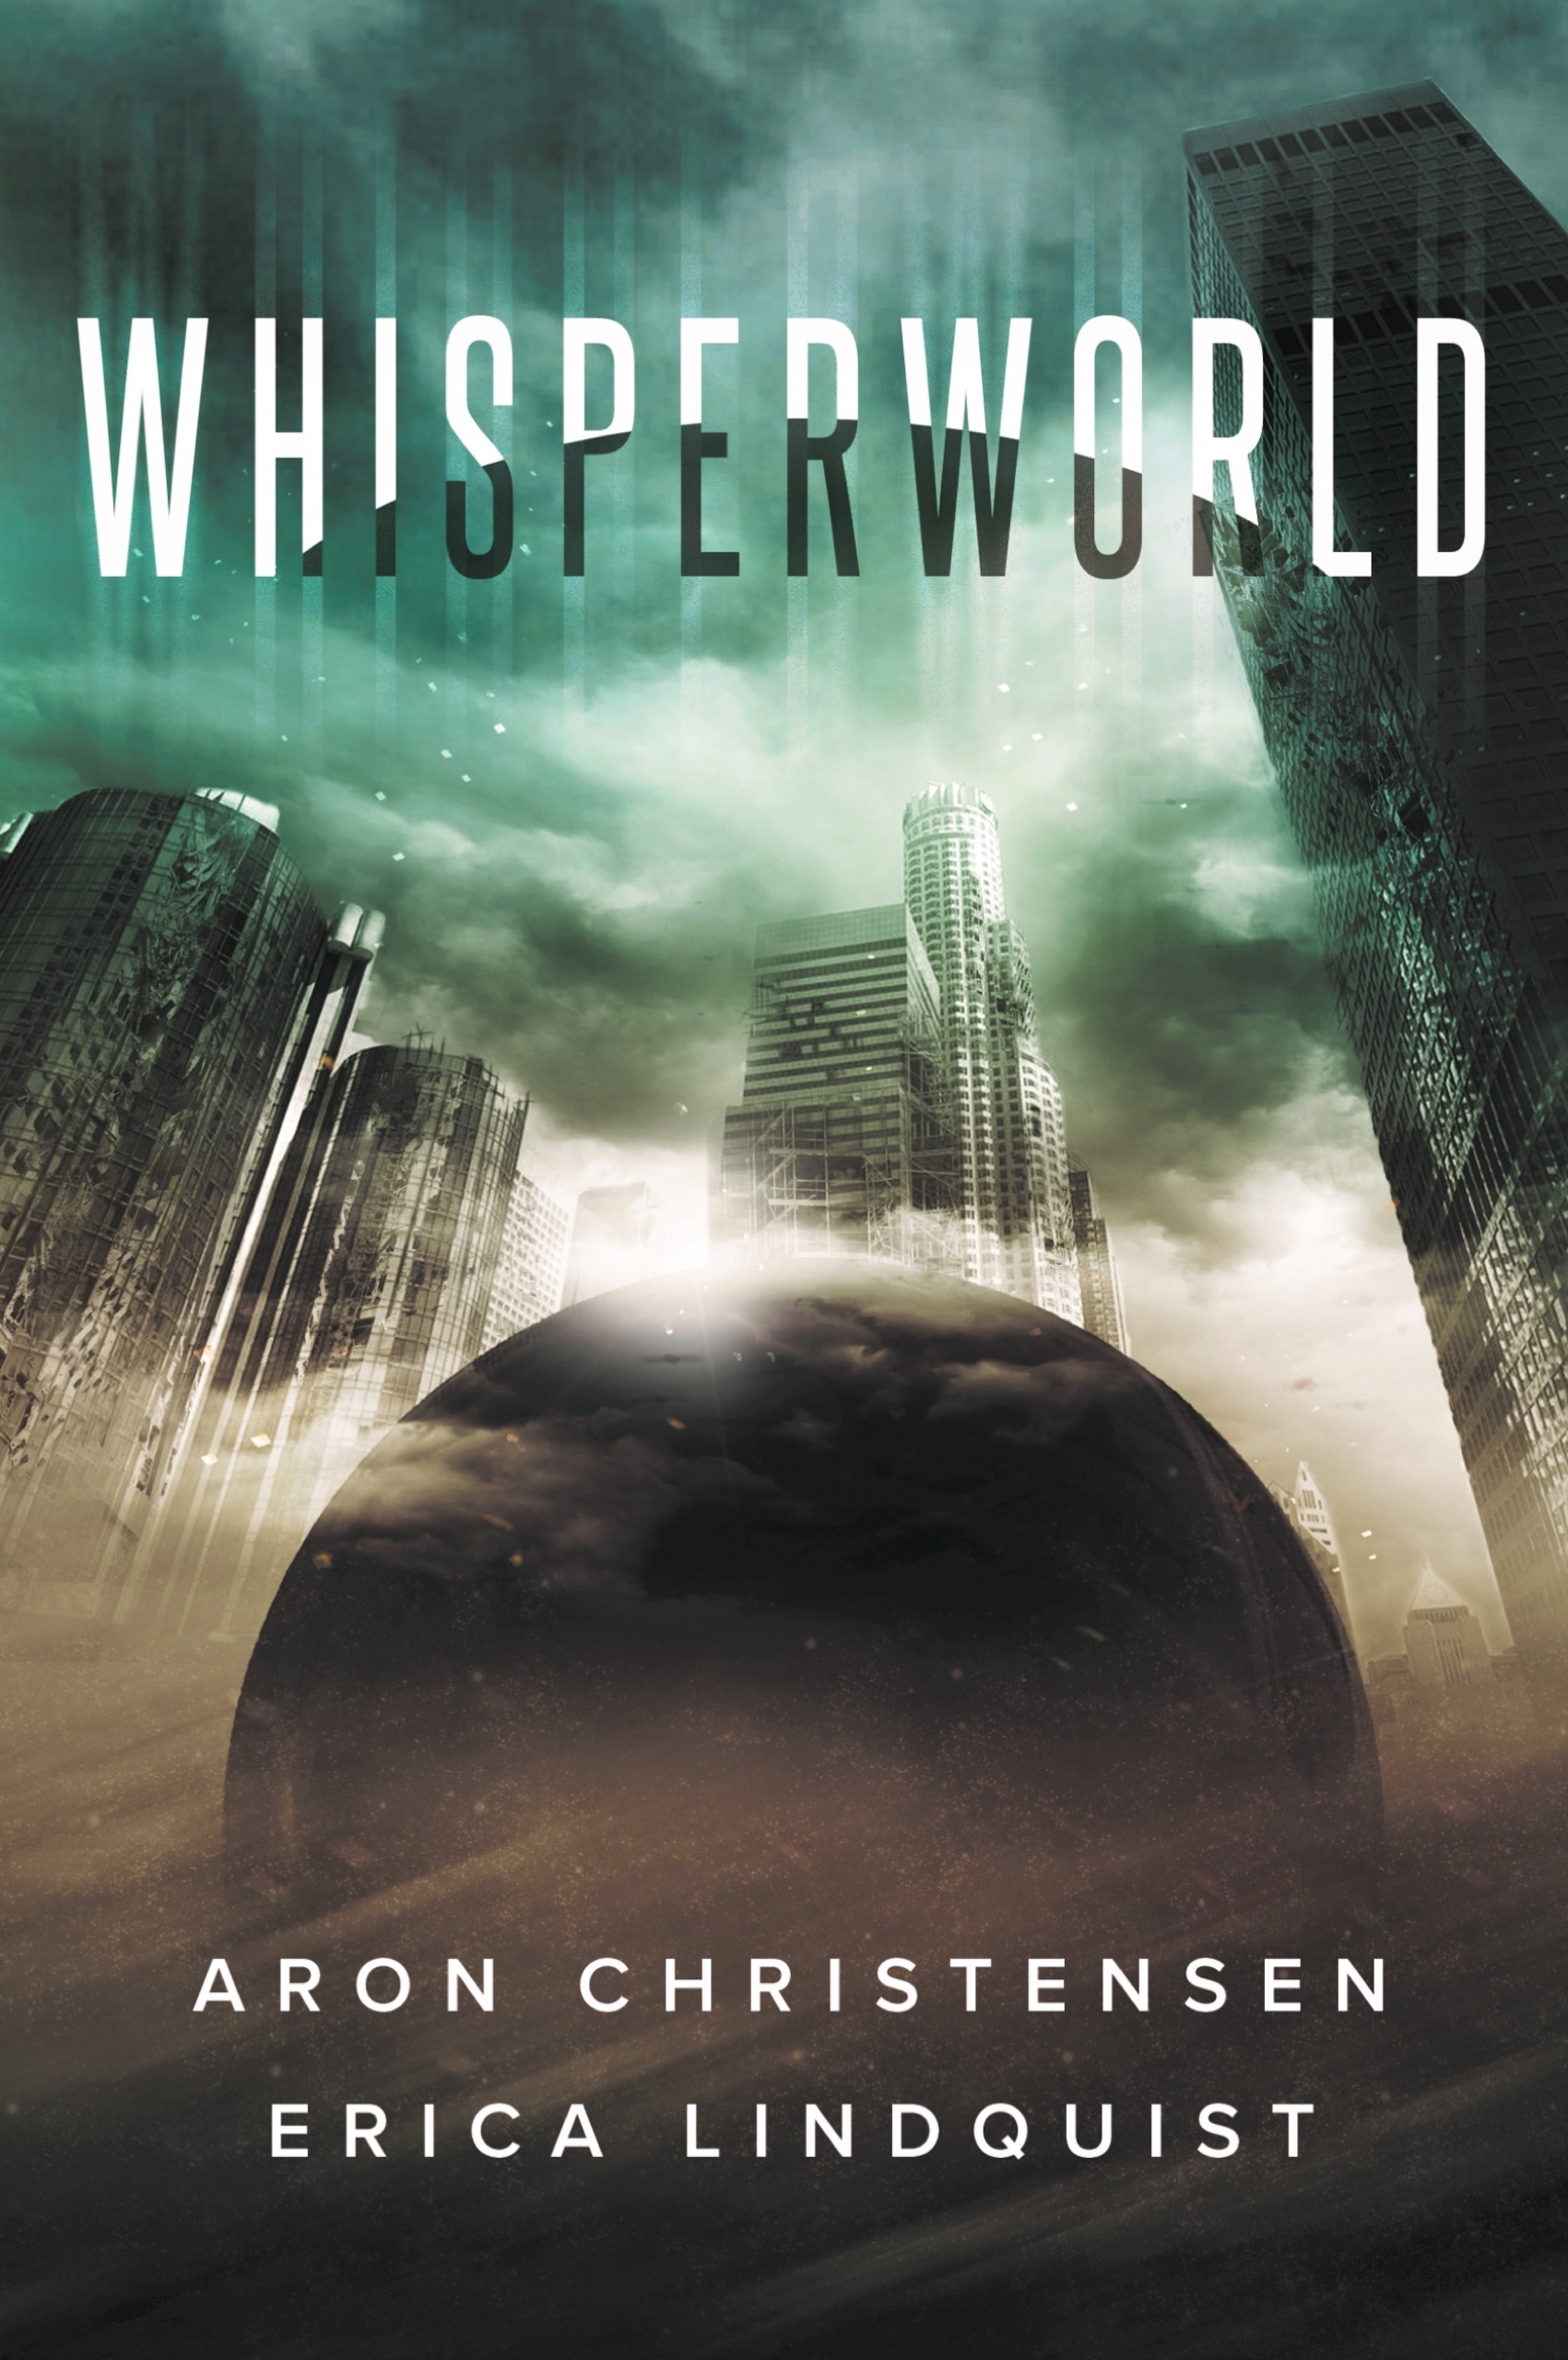 Whisperworld